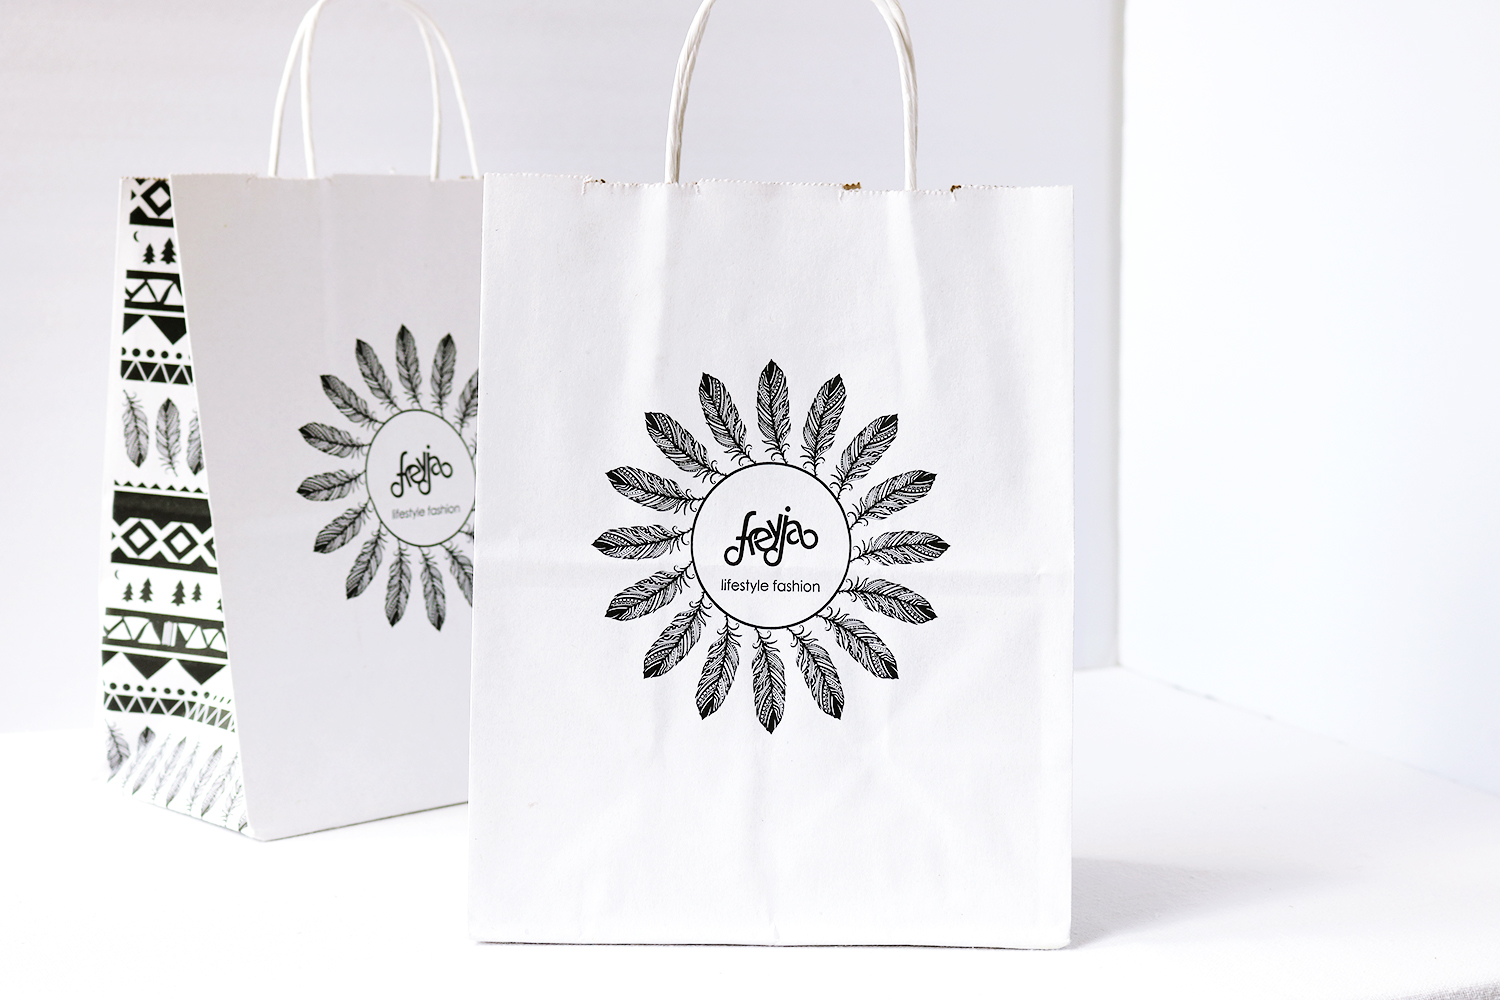 Freyja Lifestyle Fashion Retail Bag